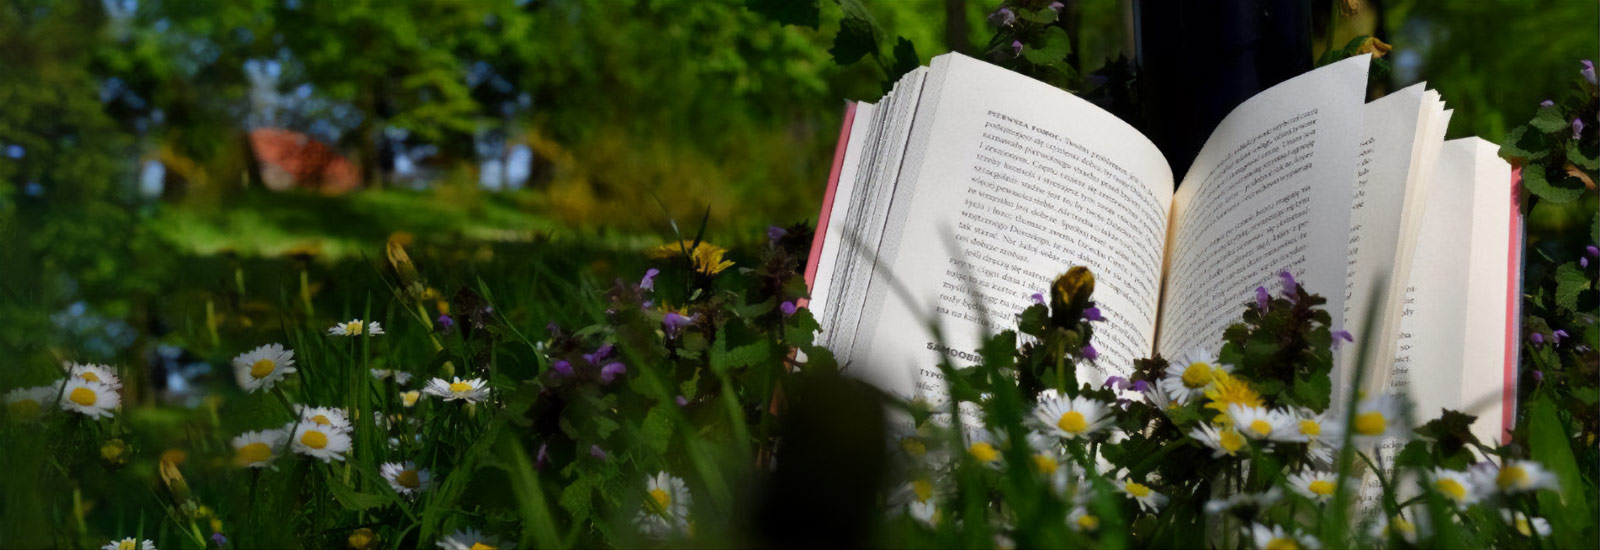 Książka jest niczym ogród, który można włożyć do kieszeni